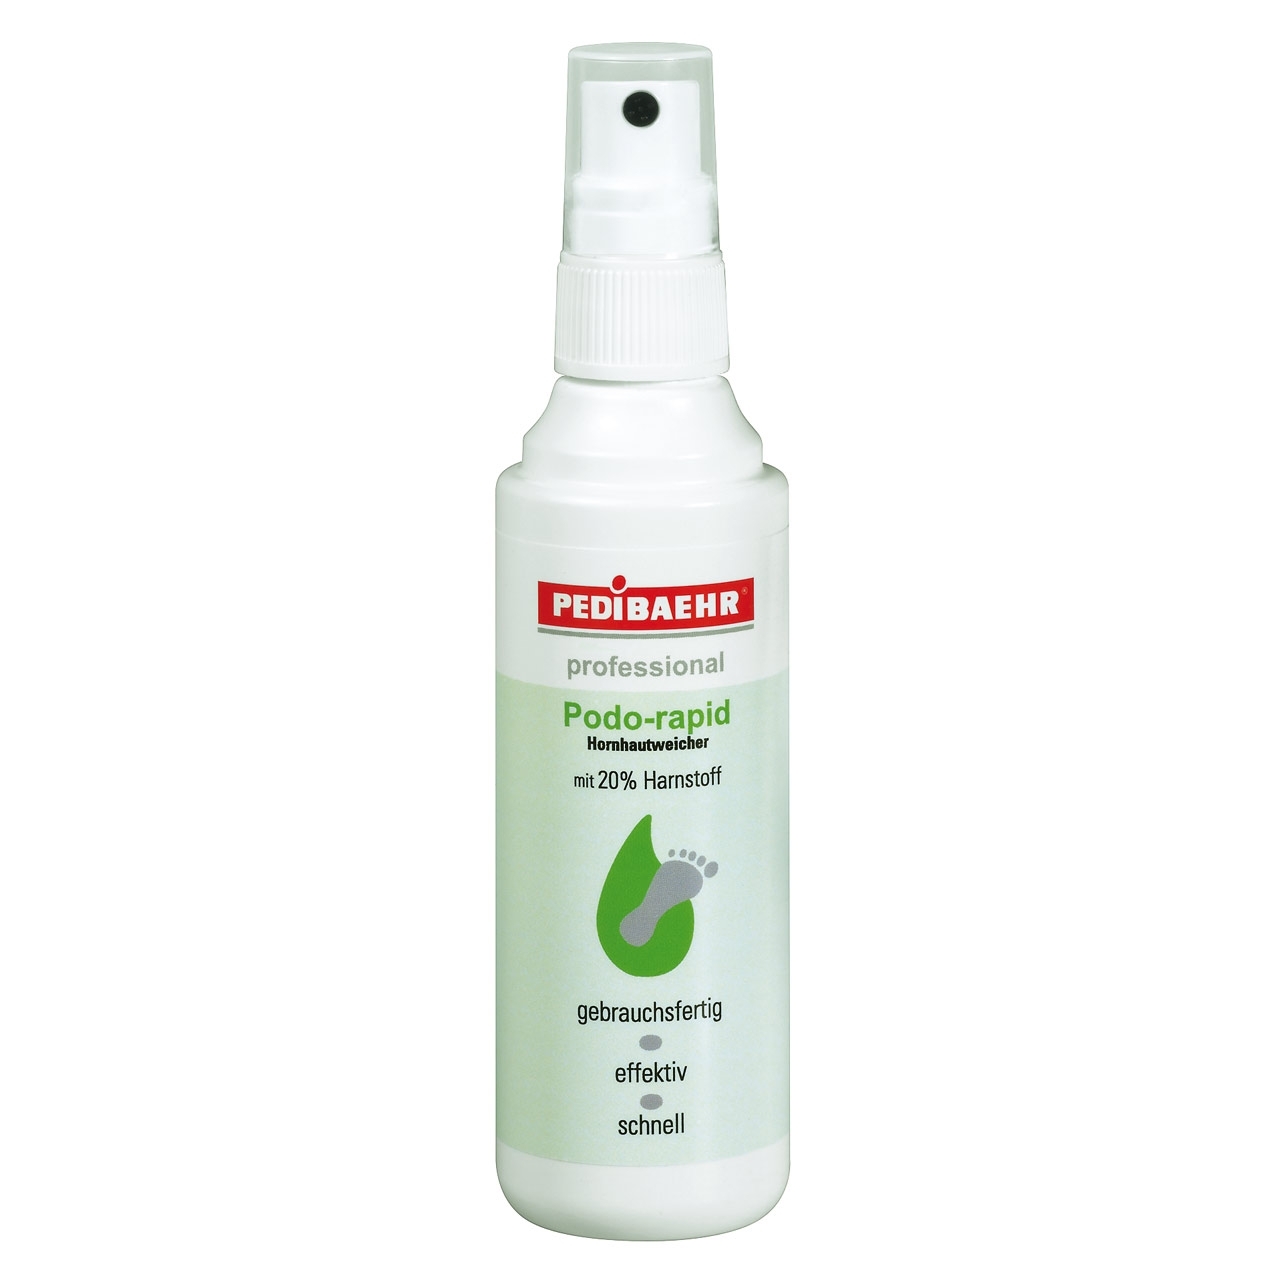 PEDIBAEHR - Podo-rapid Hornhauterweicher mit 20 % Harnstoff, 100 ml, Sprayflasche (Staffelpreis)